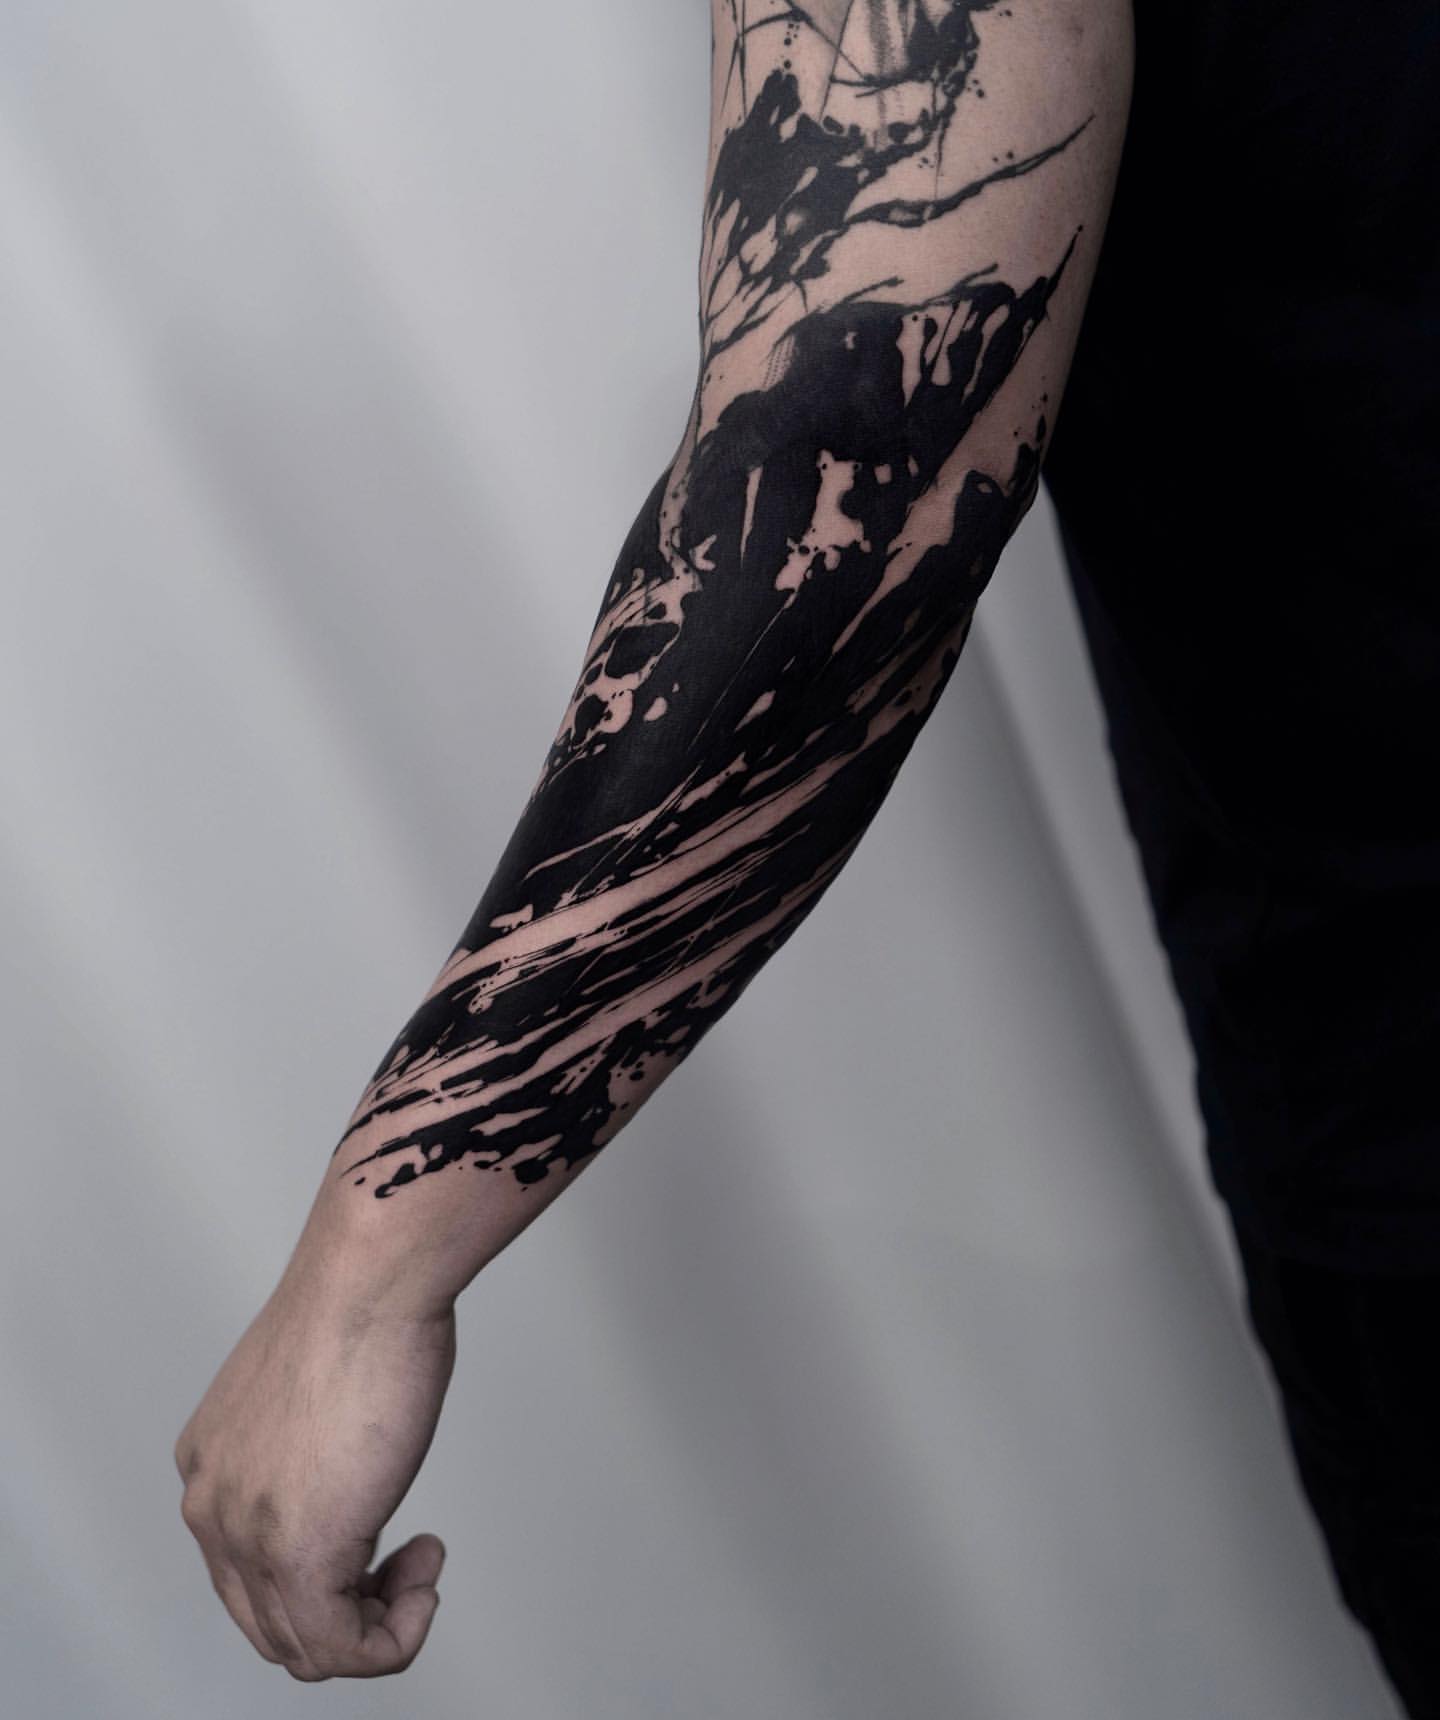 Blackout  Xăm Hình Thanh Hóa  HB Ink Tattoo Studio  Facebook